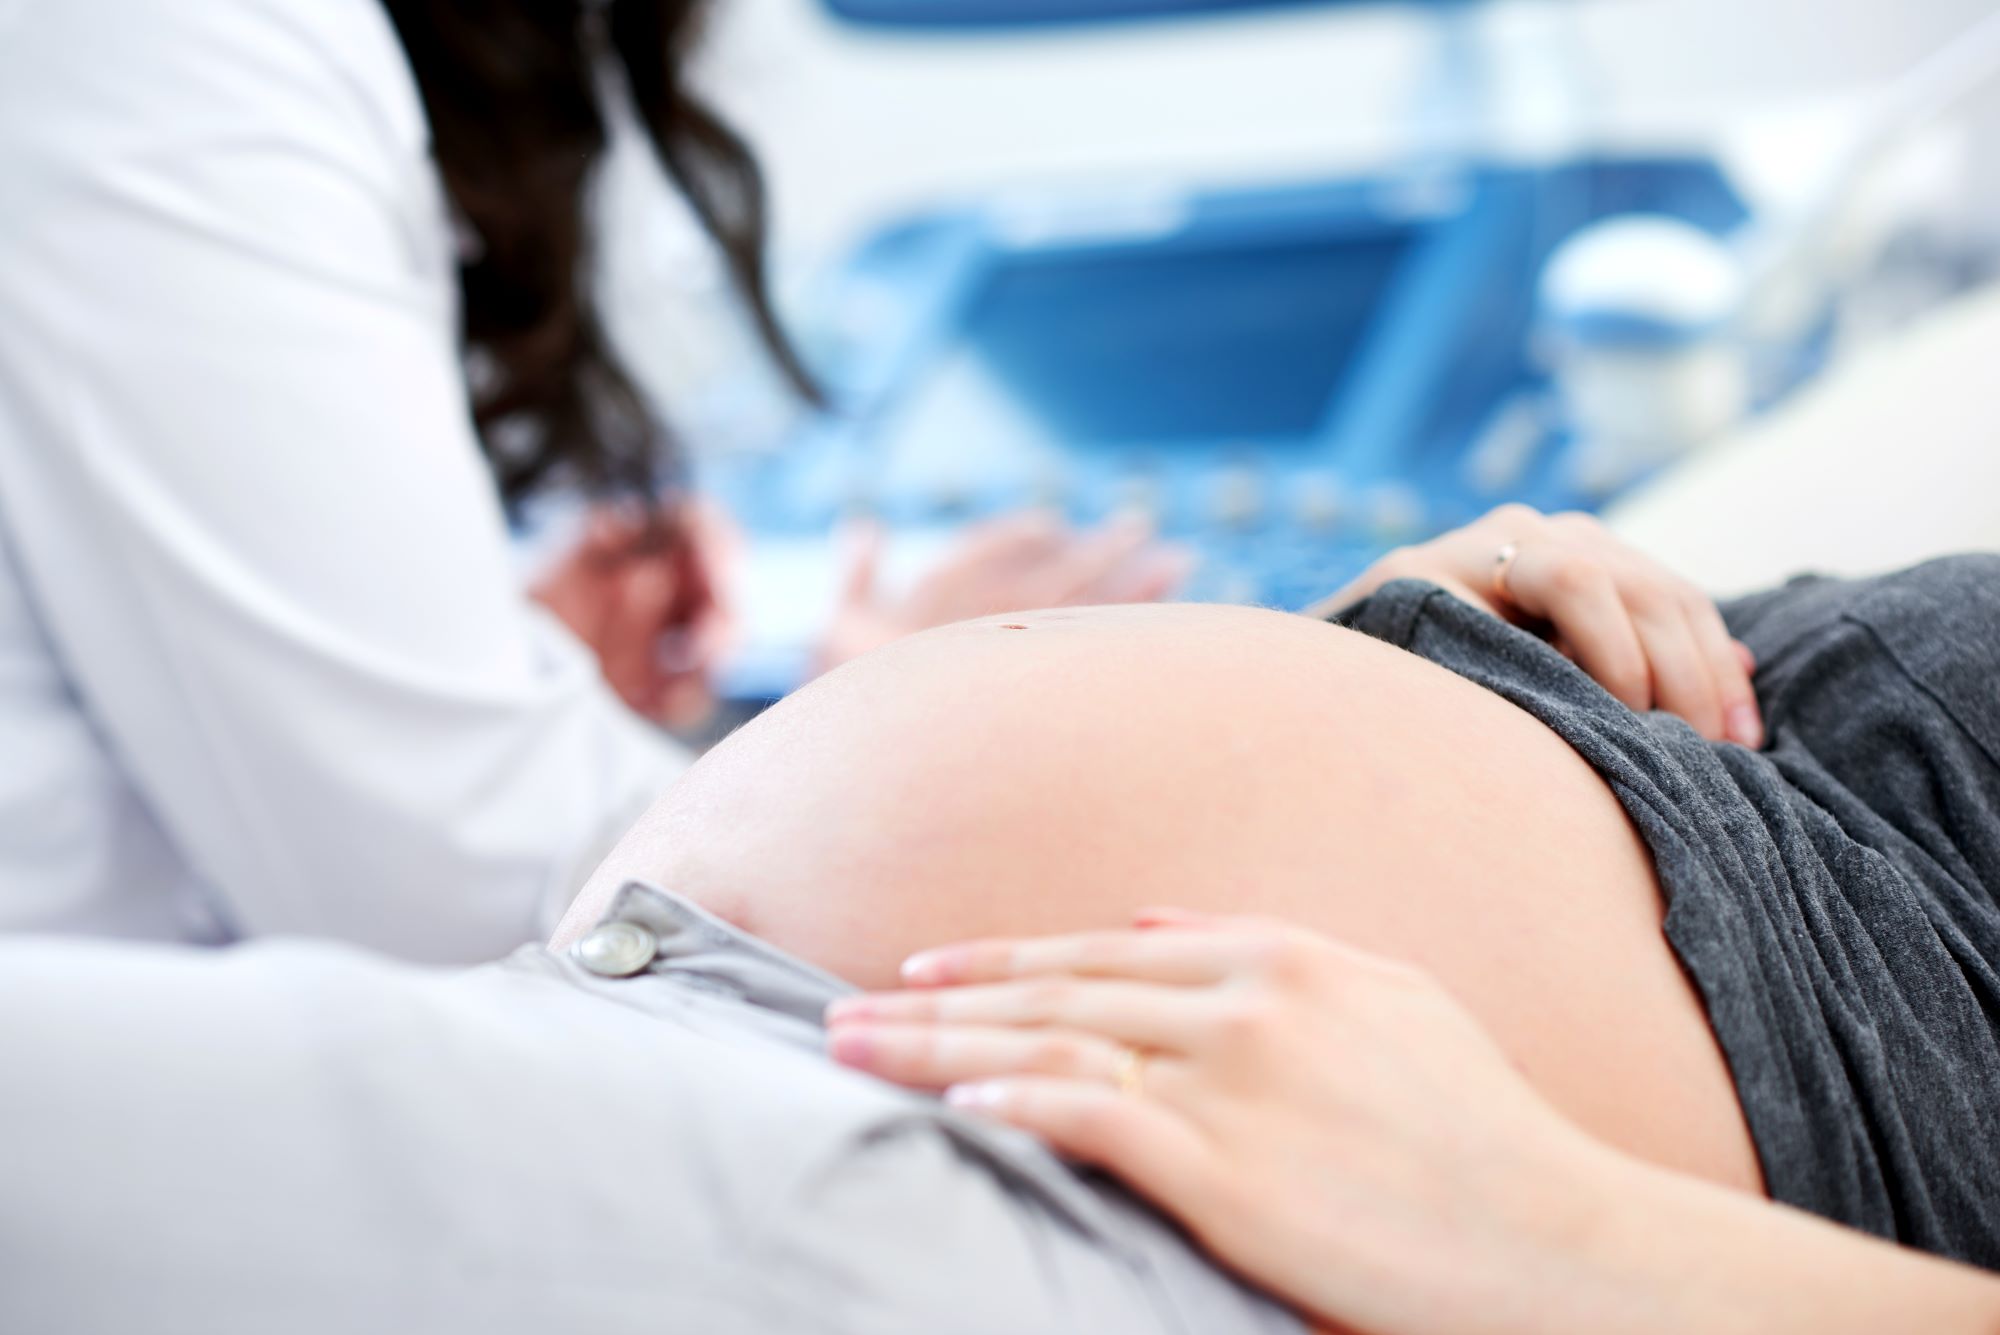 רגע לפני לידה: כל סוגי הלידות שחשוב להכיר